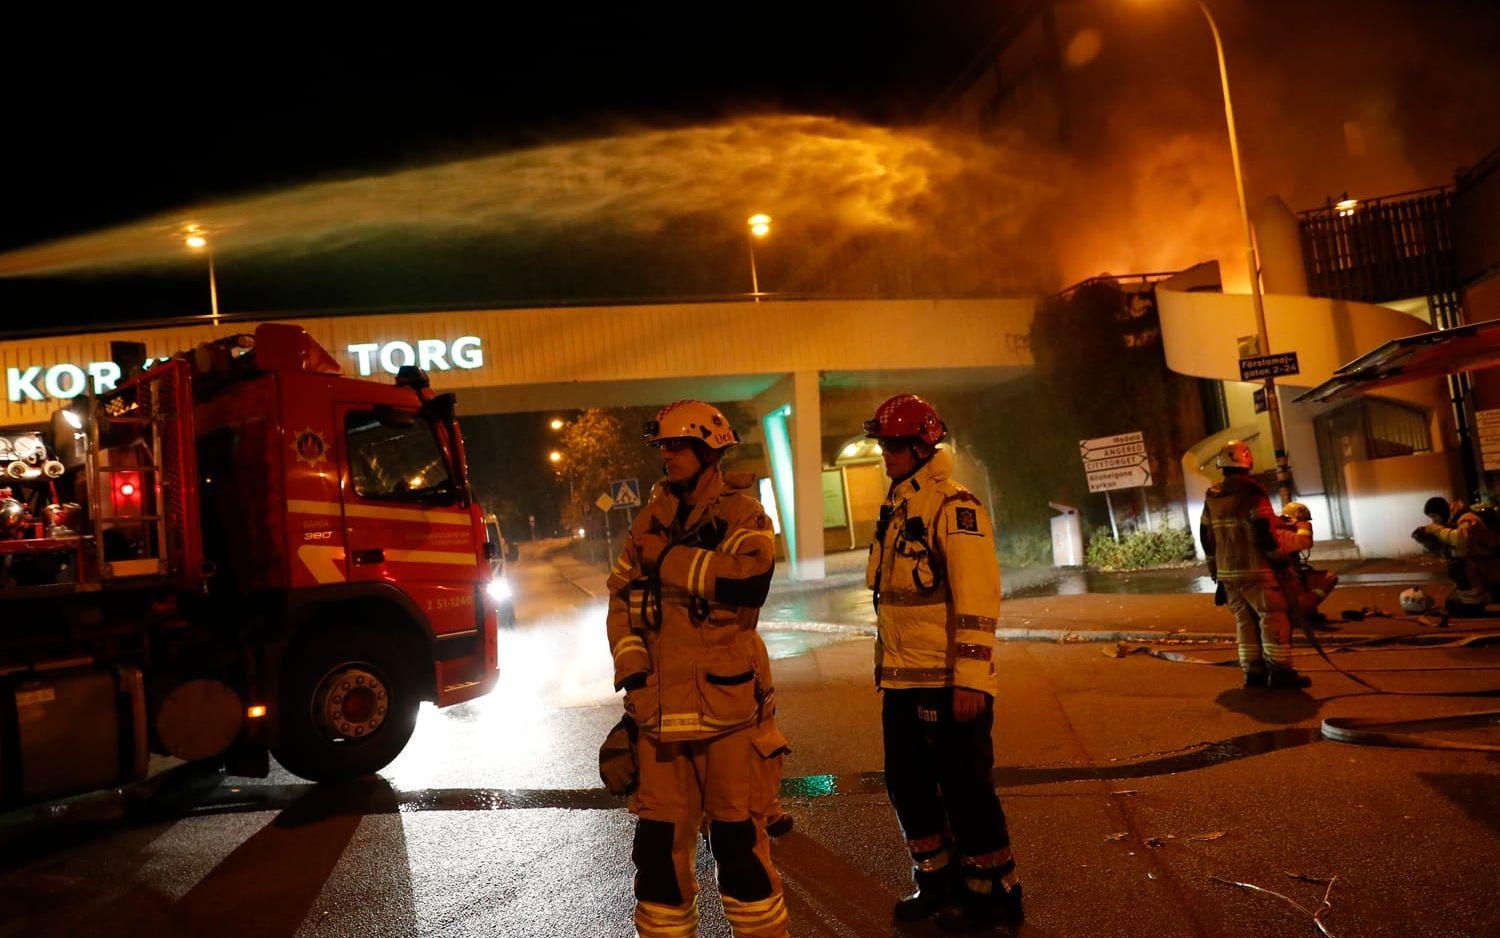 En bilbrand även vid Kortedala Torg i natt. Bild: Anders Ylander